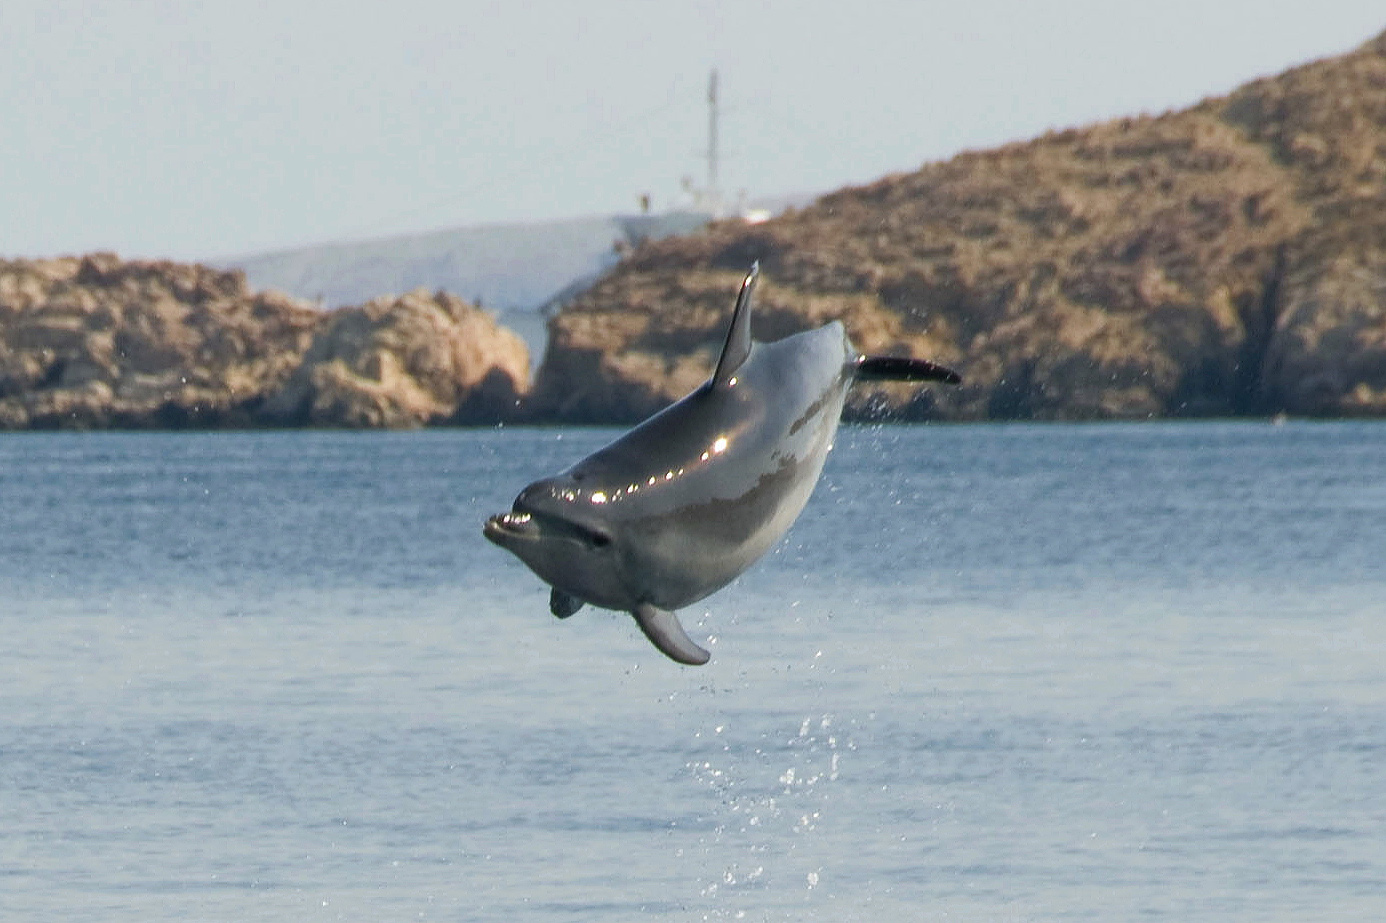 Delfin beim Salto